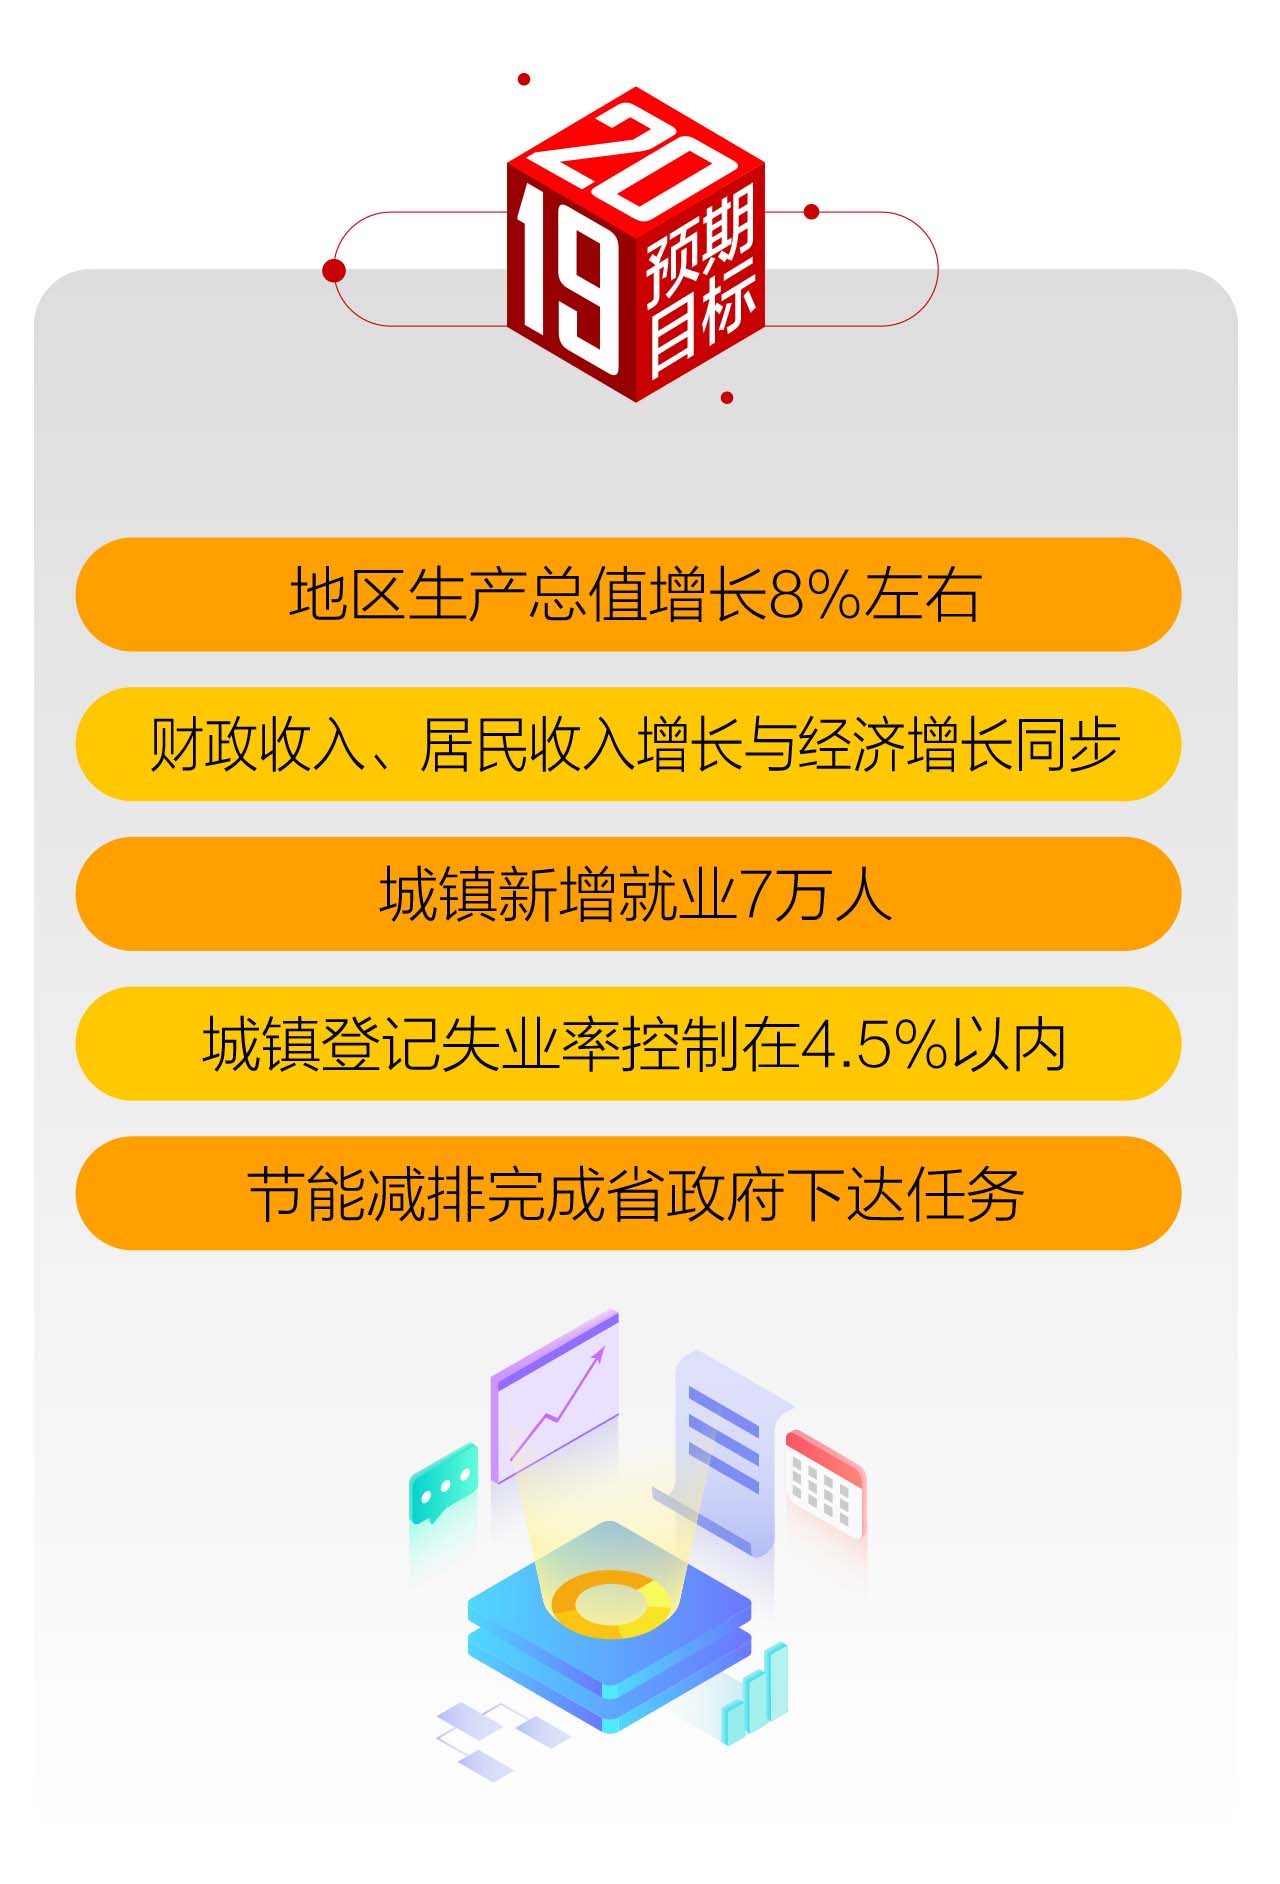 一图读懂2019年芜湖市政府工作报告